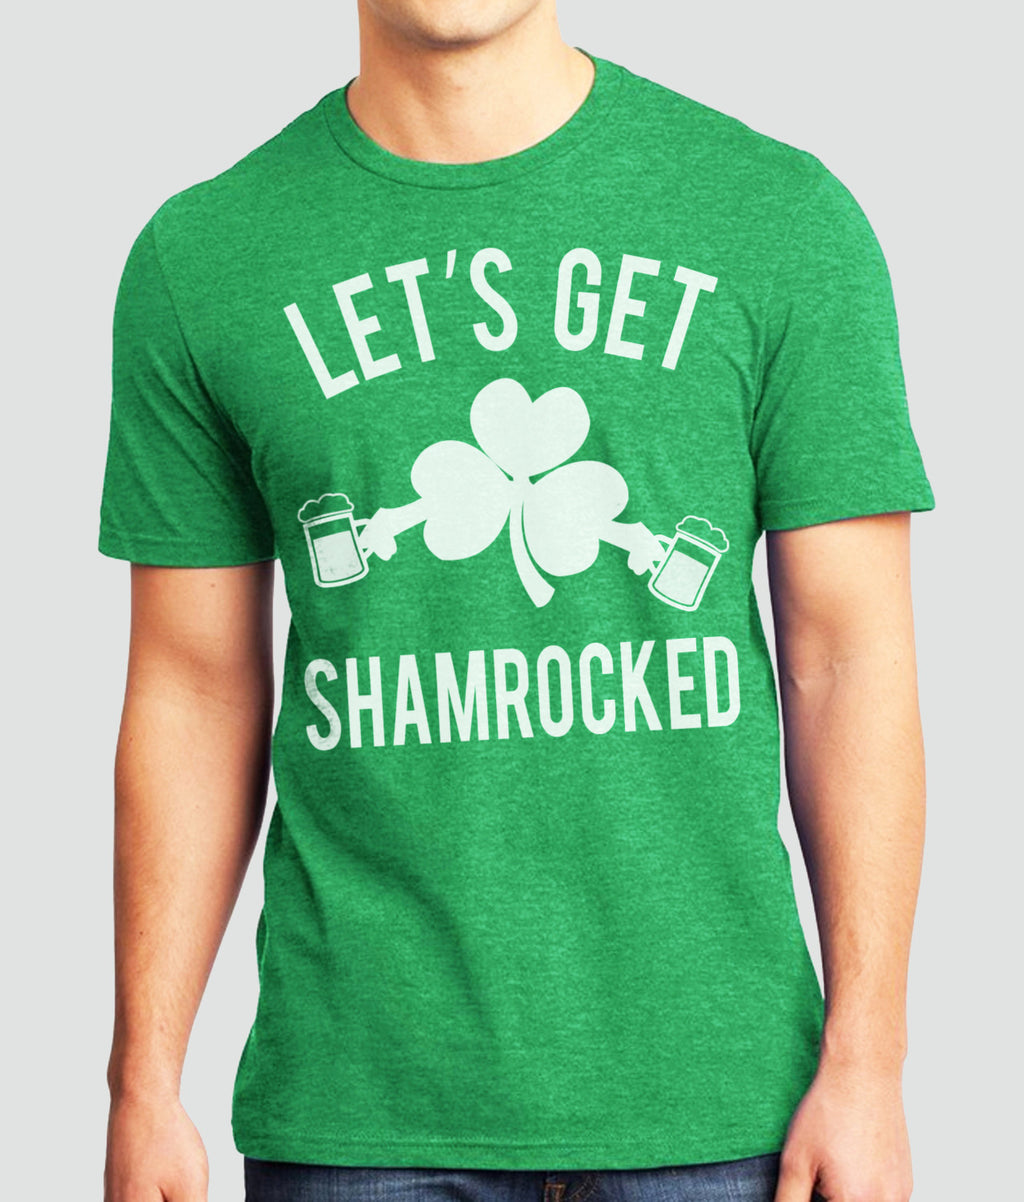 LET'S GET SHAMROCKED Men's T-Shirt, Green Tri-Blend